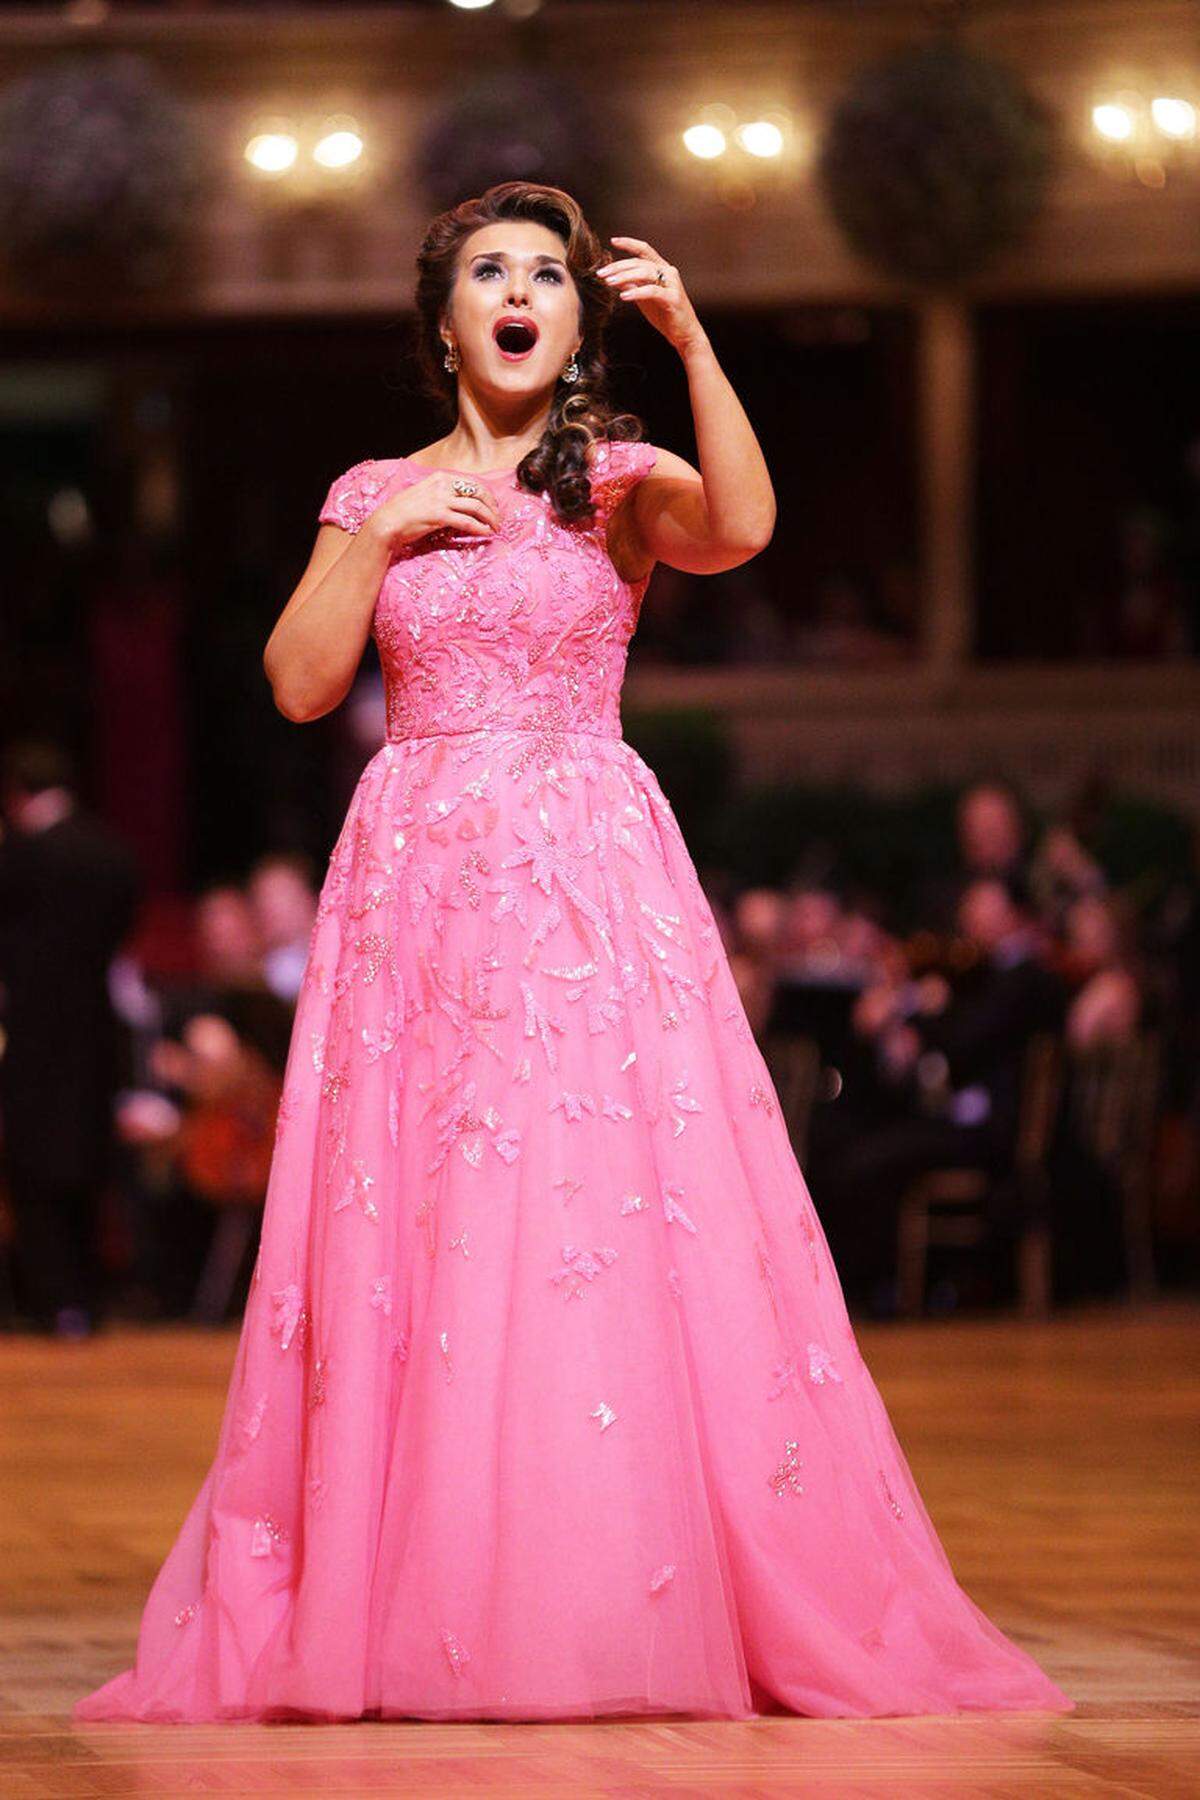 Sopranistin Olga Peretyatko trug bei ihrem Auftritt ein Kleid von Zuhair Murad.